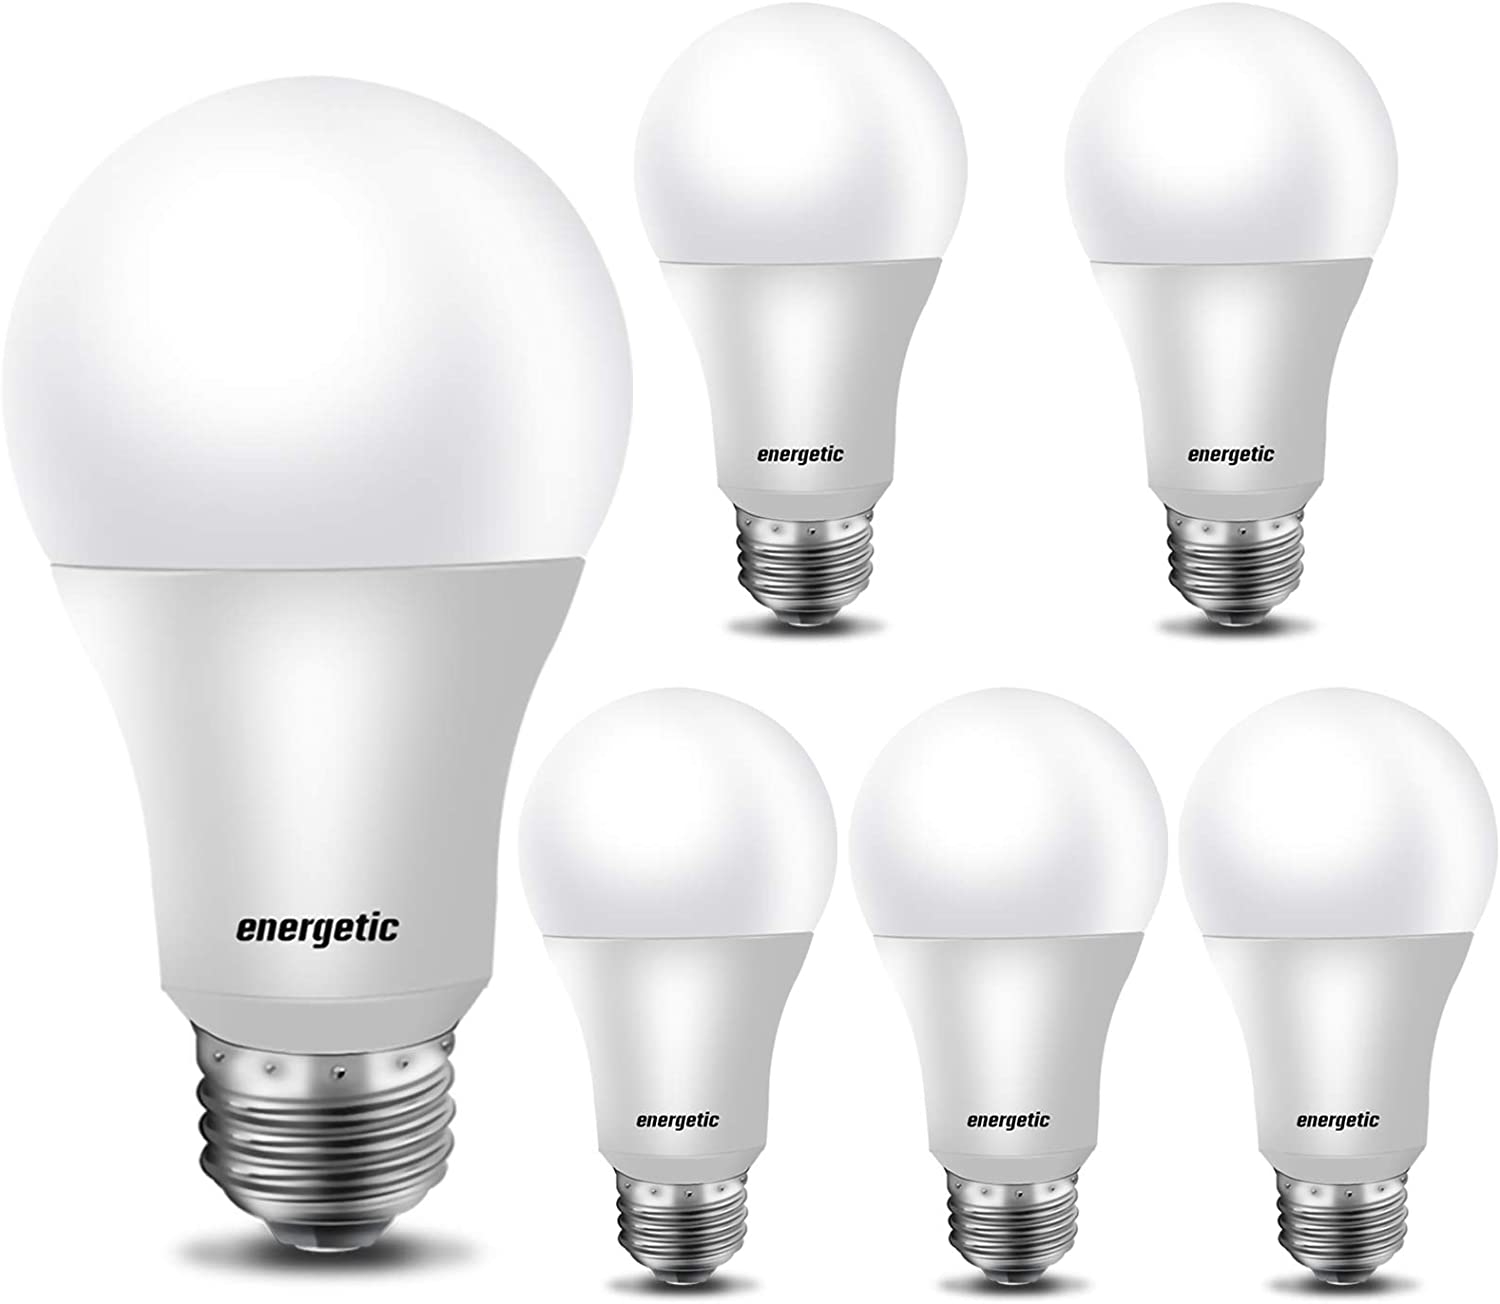 【Energy Star】A19 LED Light Bulb, E26 Standard Base, 6 Pack